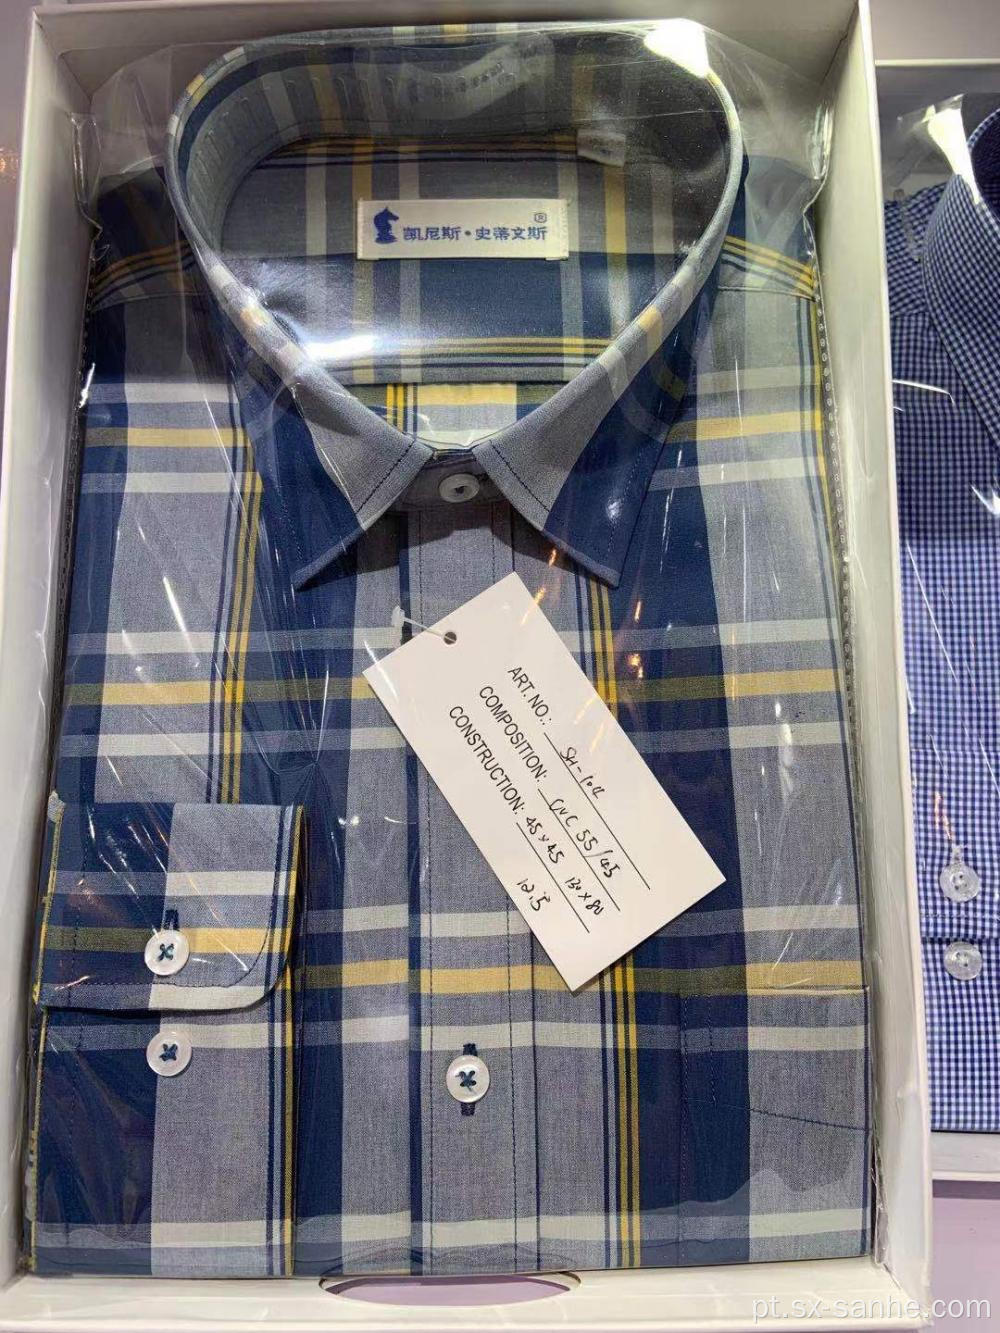 Camisas de manga comprida em tecido xadrez tingido de fio de algodão